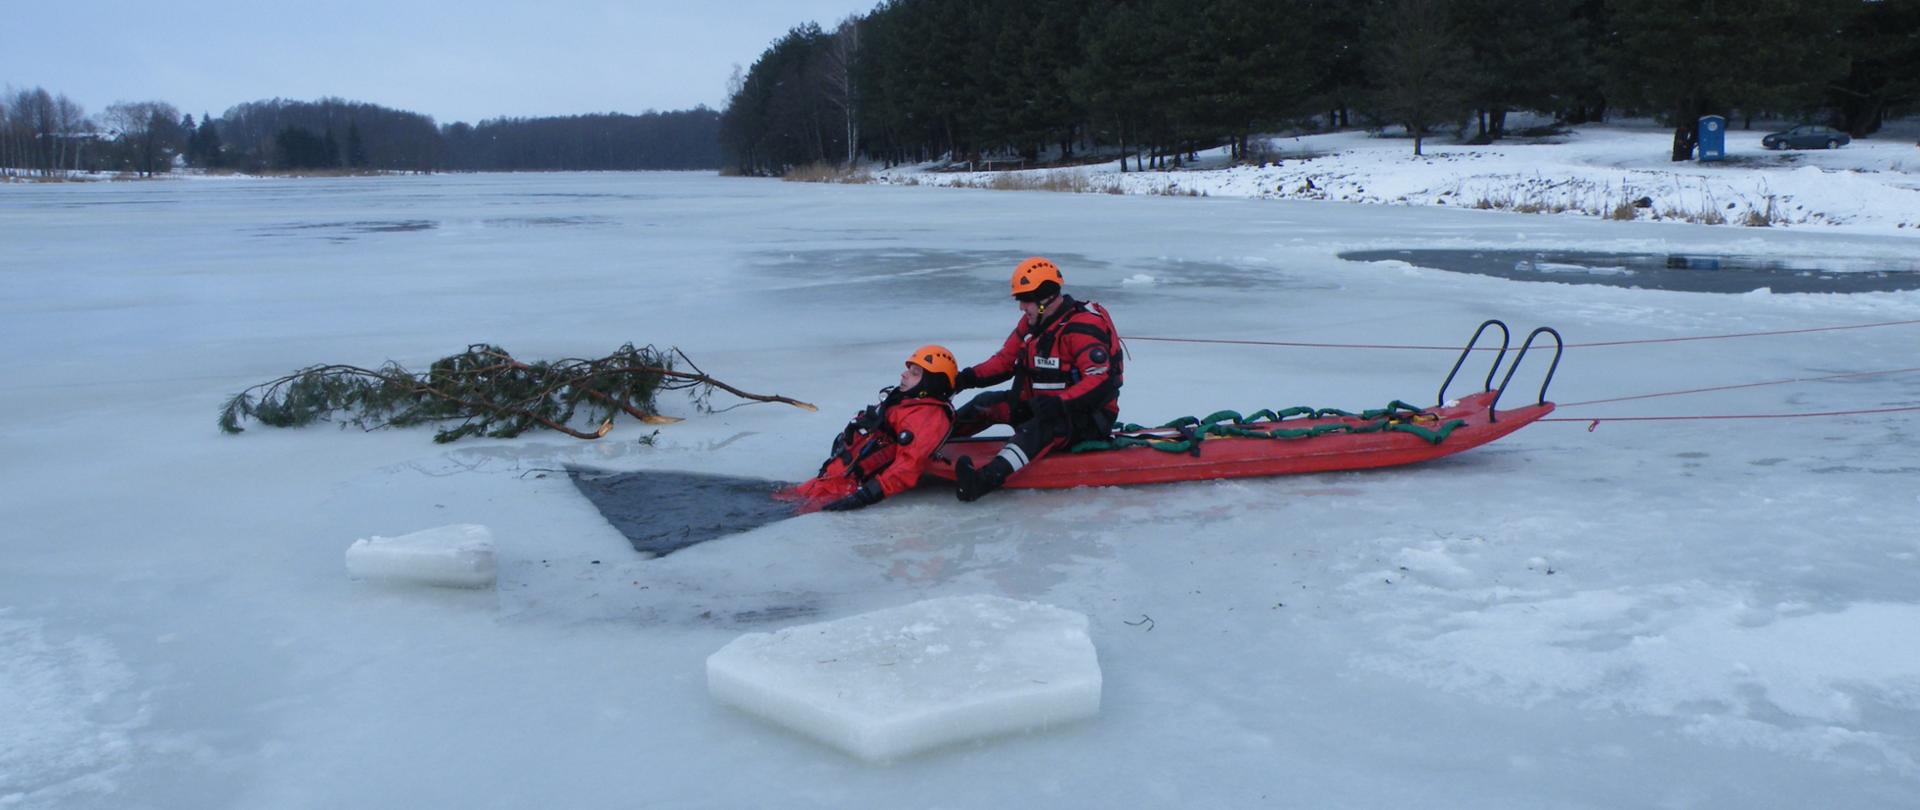 Strażak na saniach lodowych wyciąga osobę pod którą załamał się lód